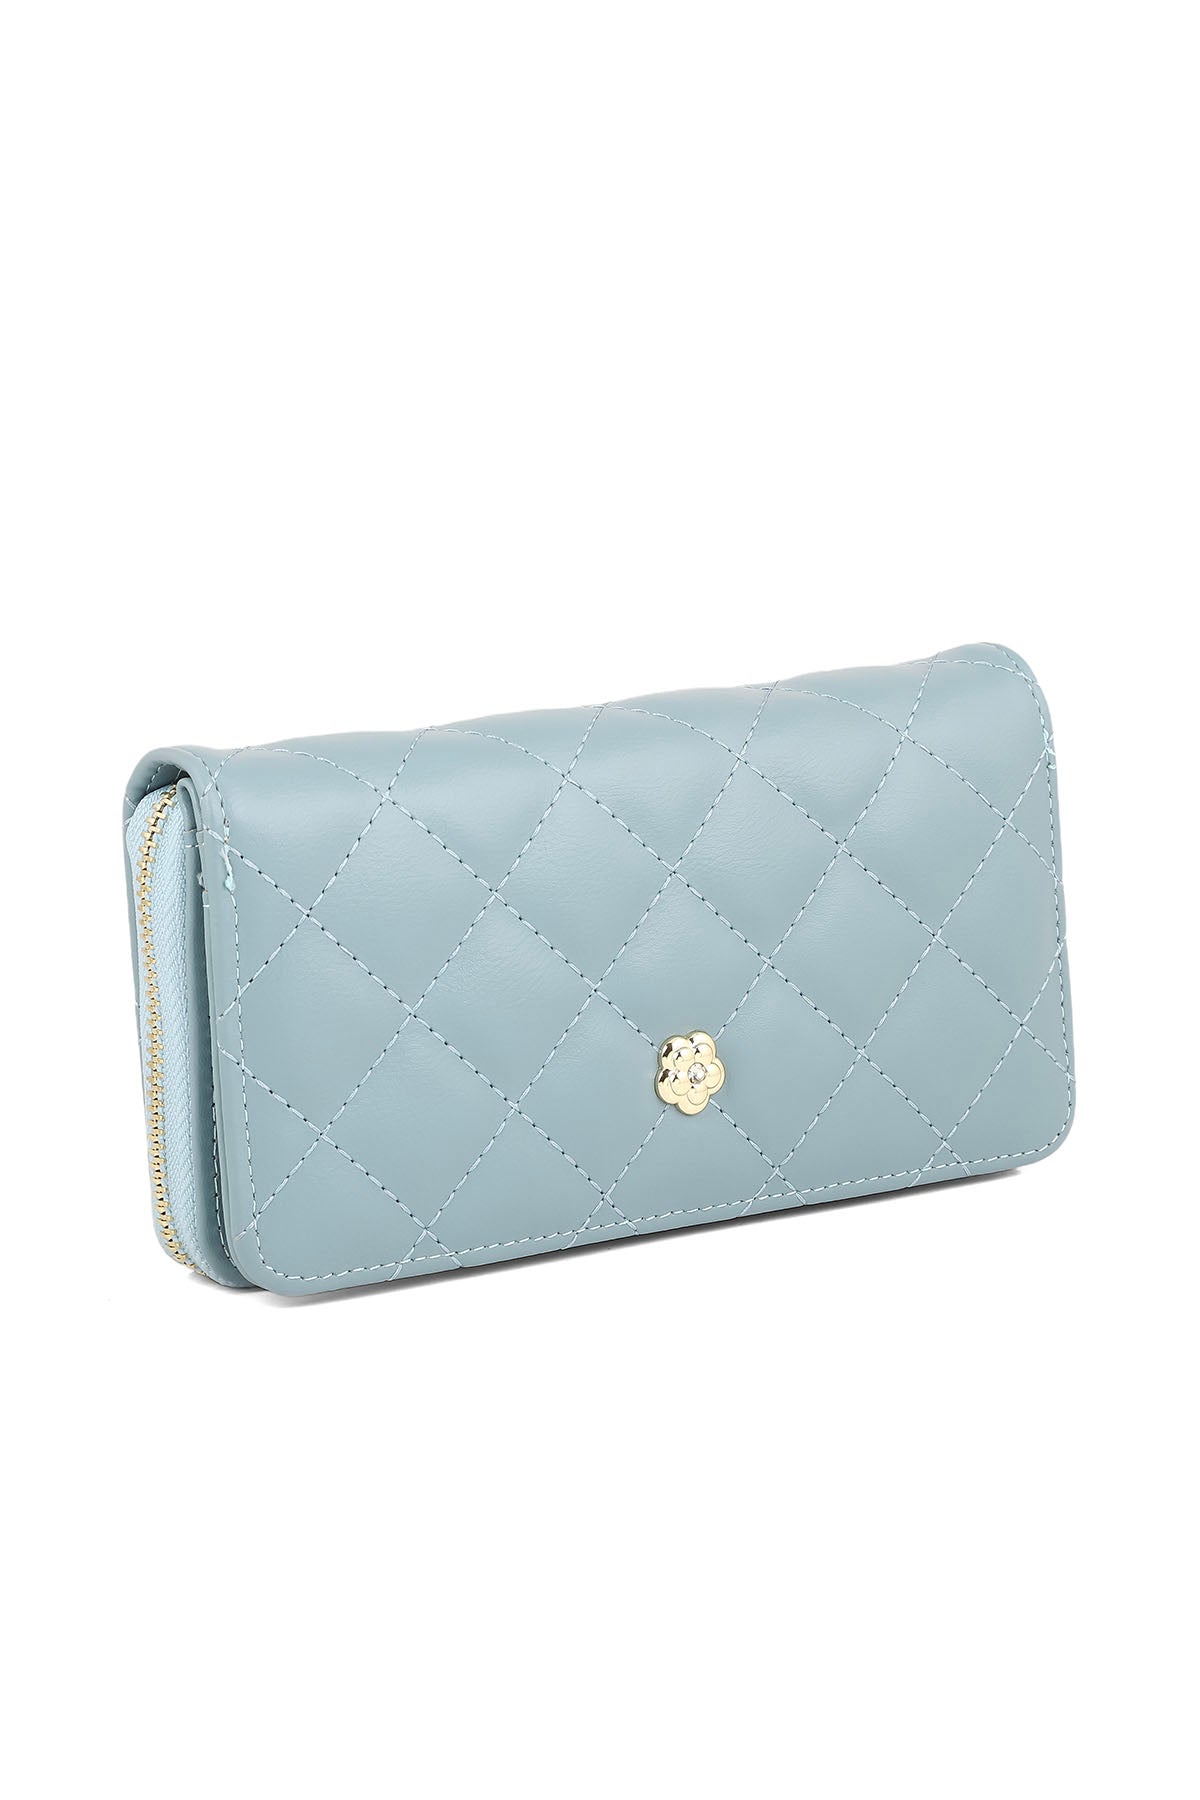 Wristlet Wallet B26045-Blue